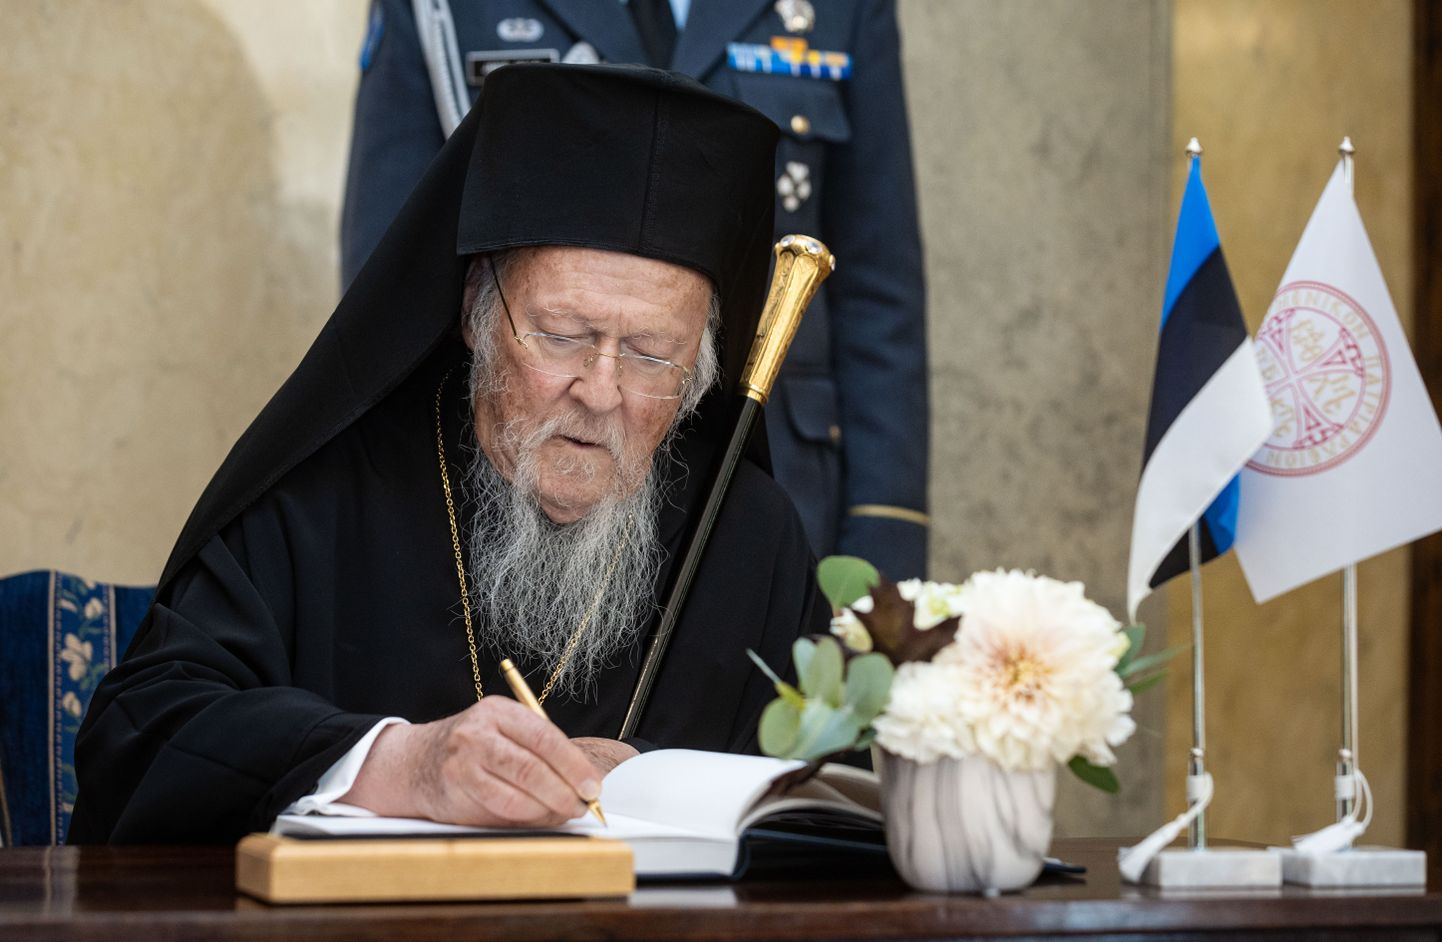 Patriarh Bartolomeus jäädvustas Kadriorus president Alar Karisega kohtumise külalisteraamatusse.